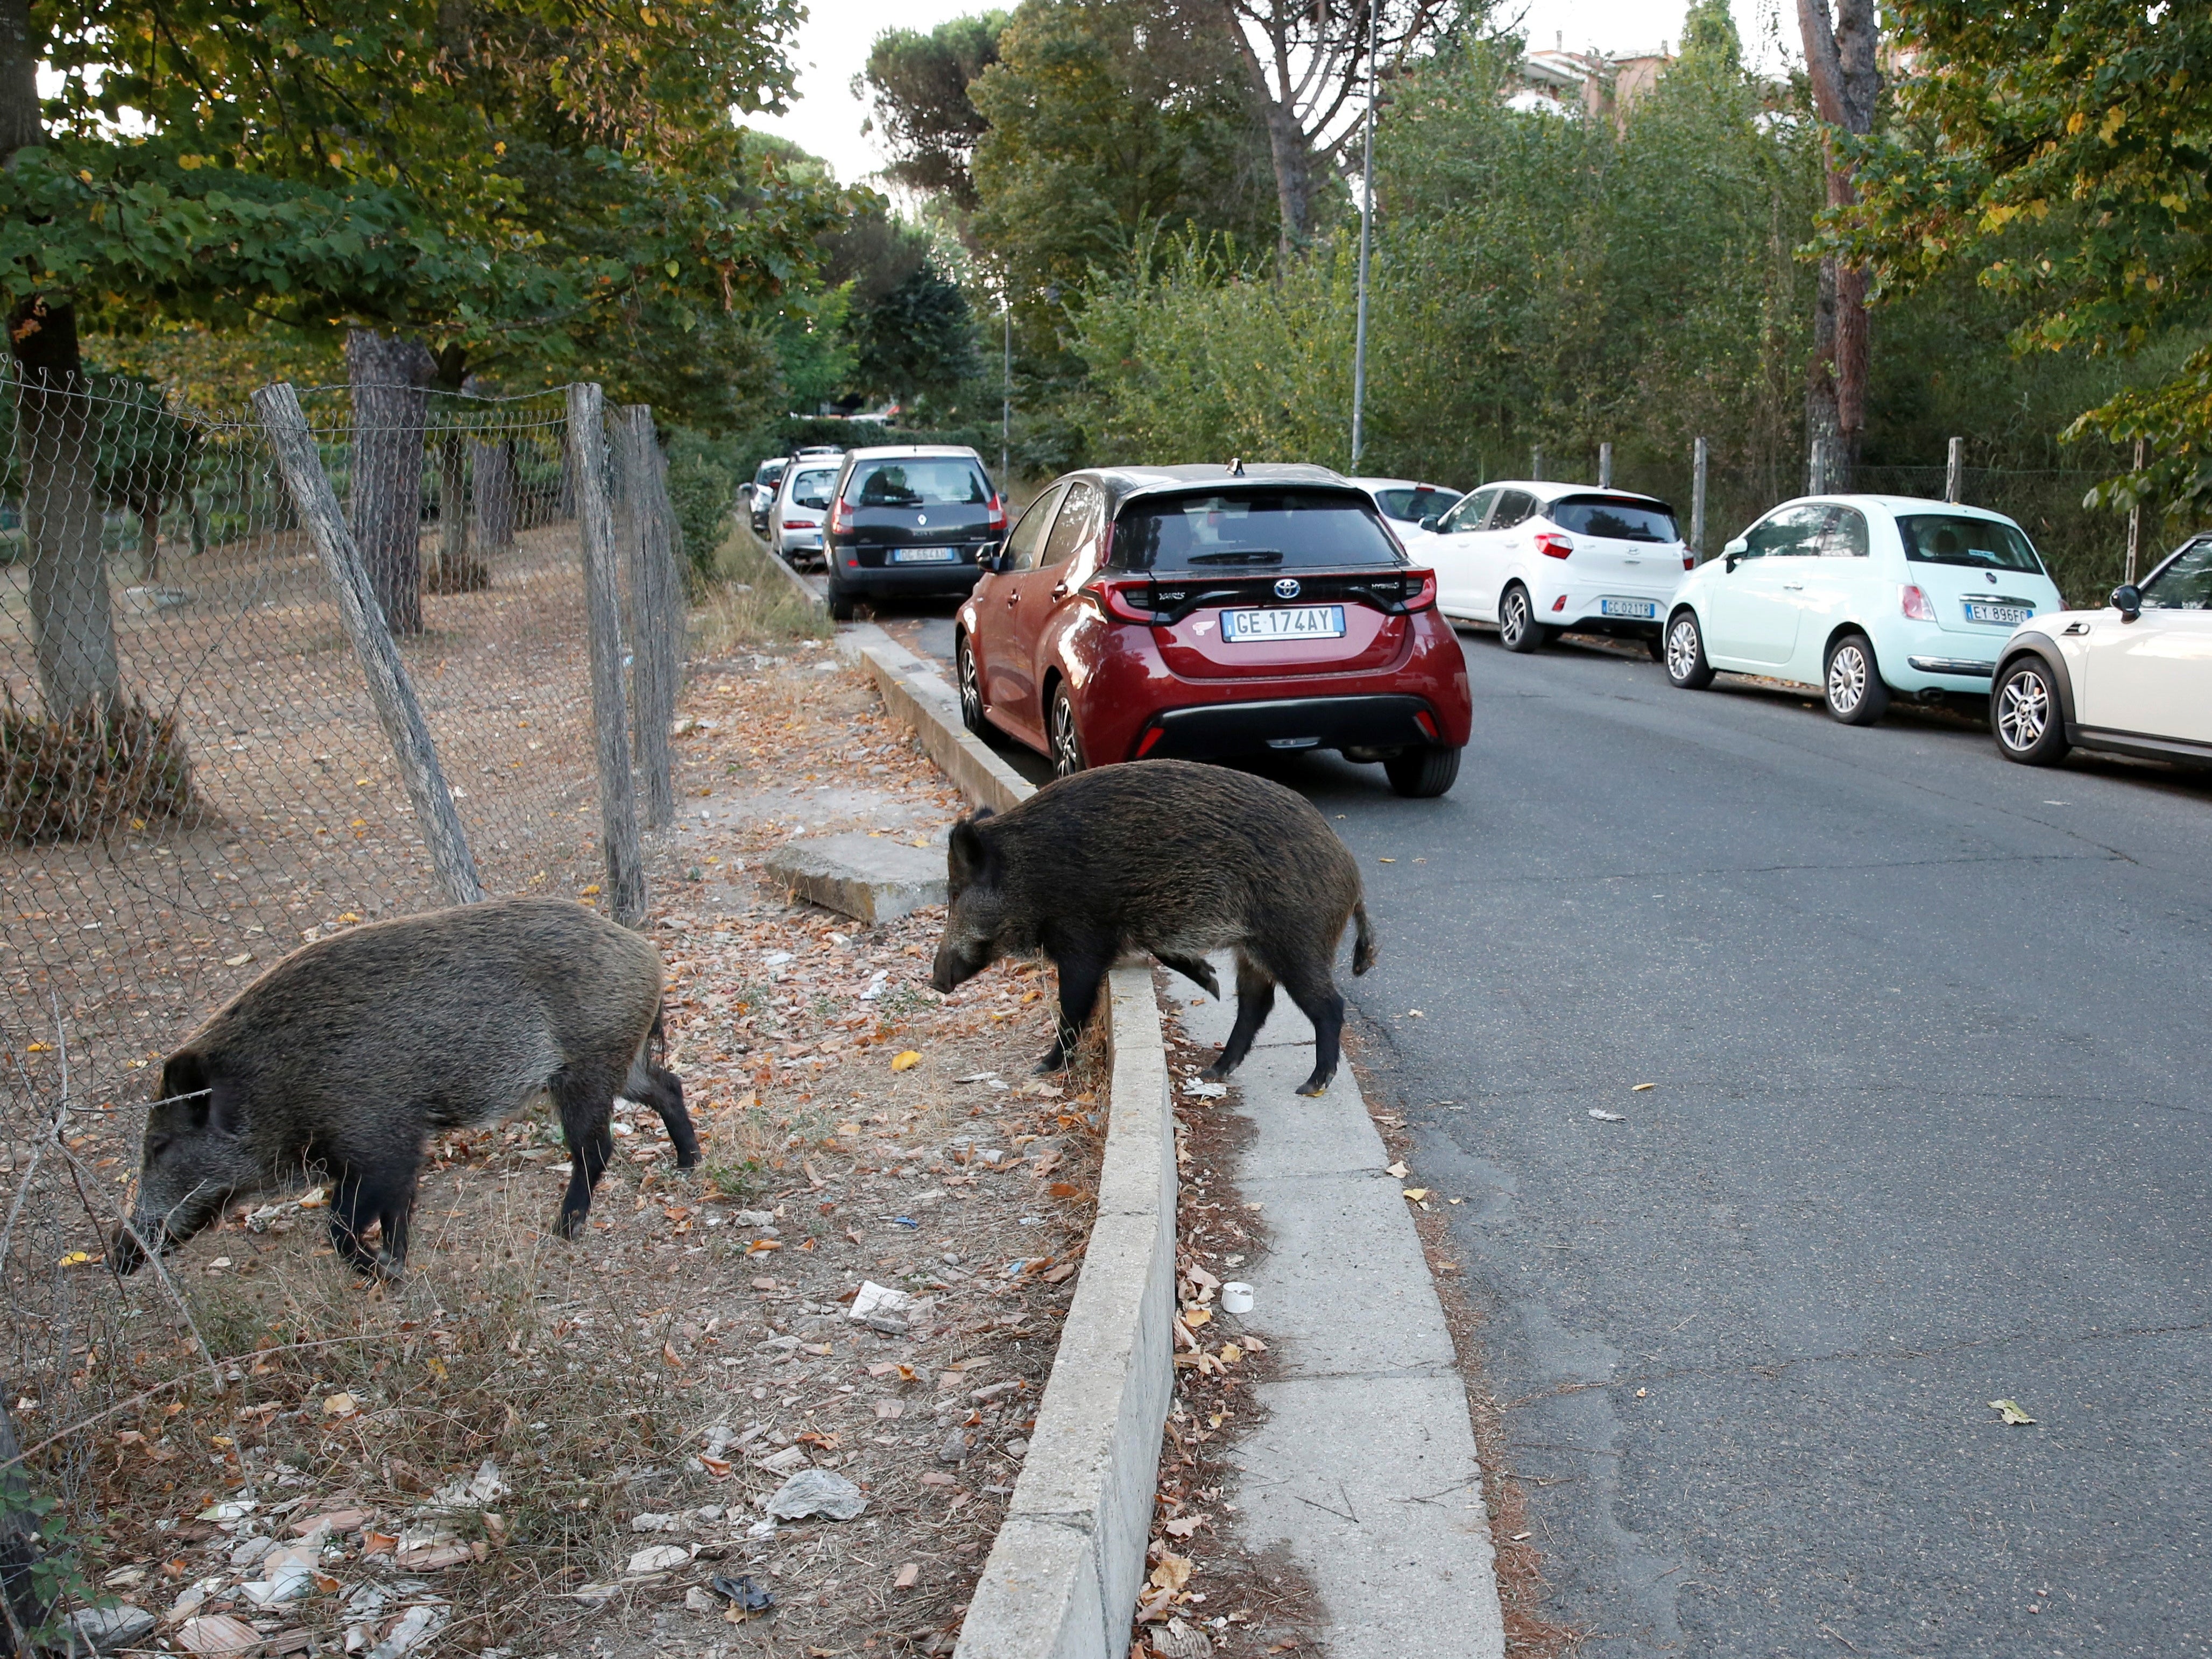 Wild boars have been wreaking havoc in Rome